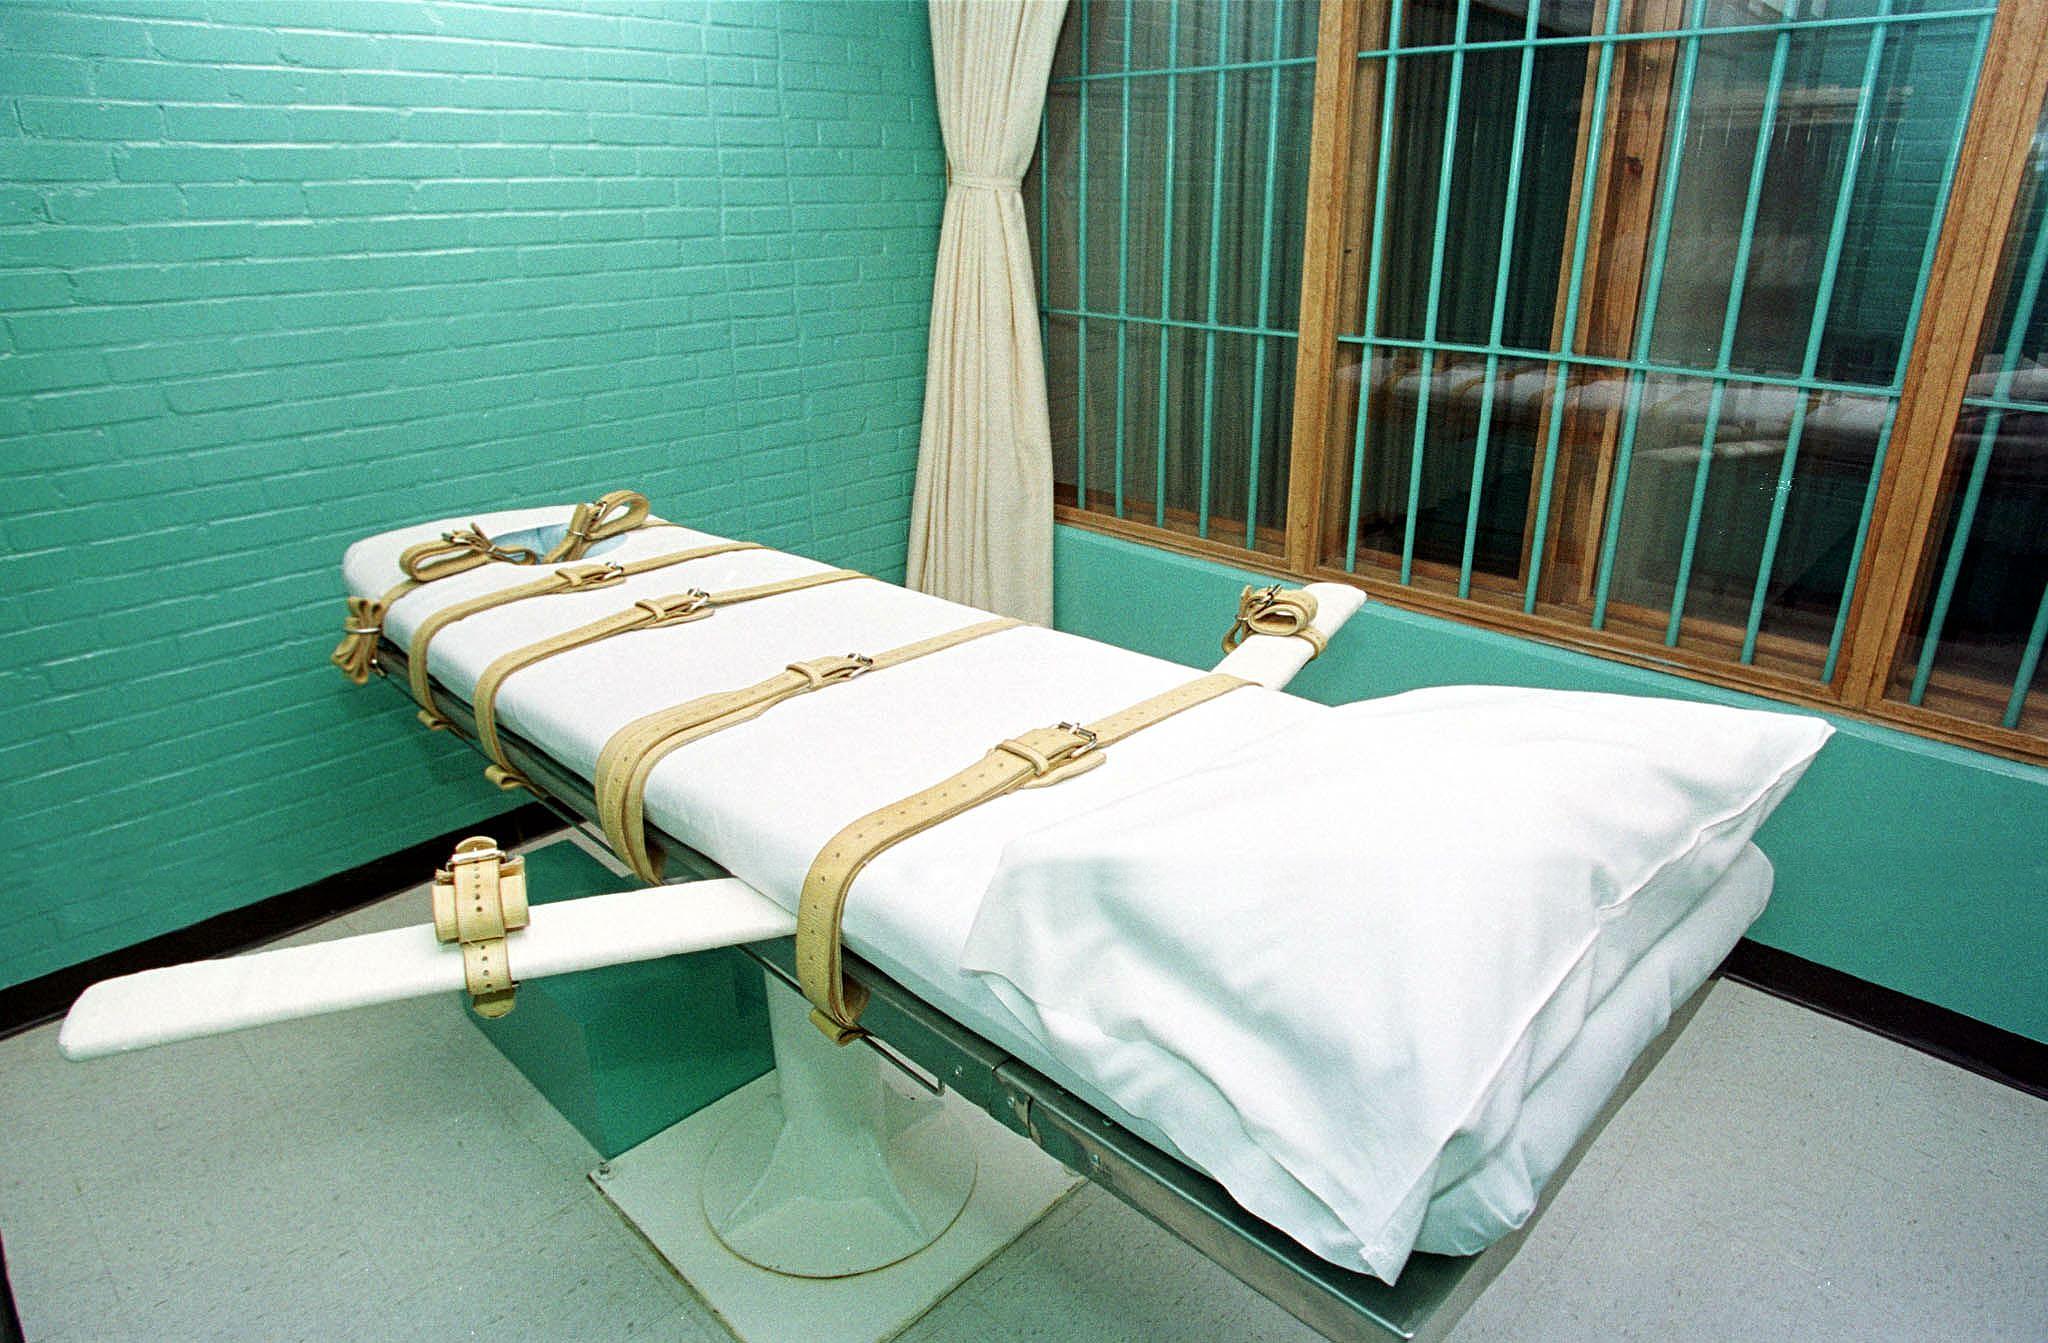 Újabb meghiúsult kivégzés Alabama államban, a kormányzó az ítéletvégrehajtás teljes felülvizsgálatát kéri